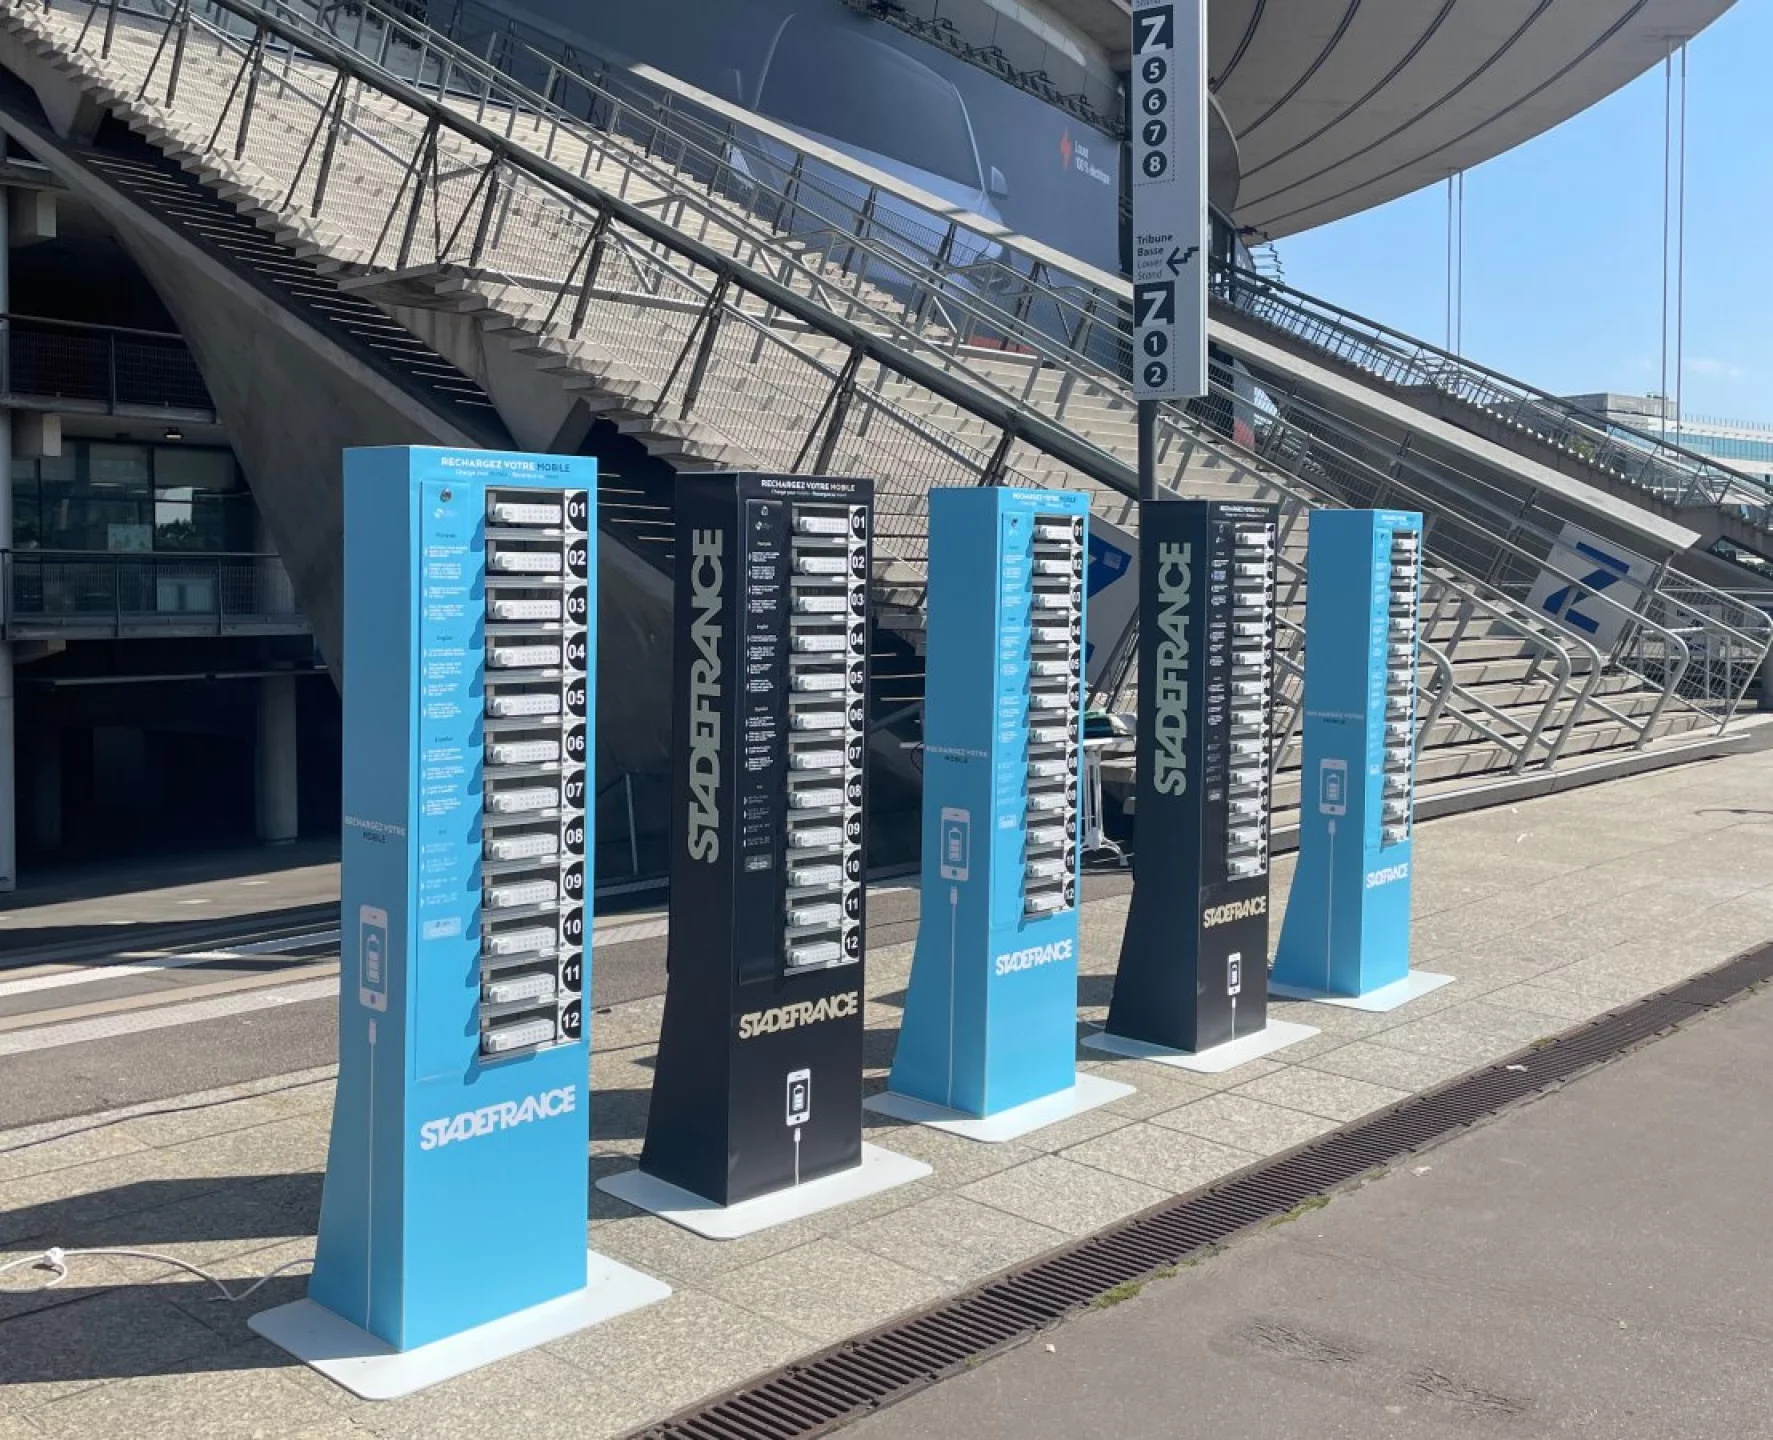  Dématérialisation des billets : Le Stade de France installe des bornes de recharge pour téléphone pour ses événements